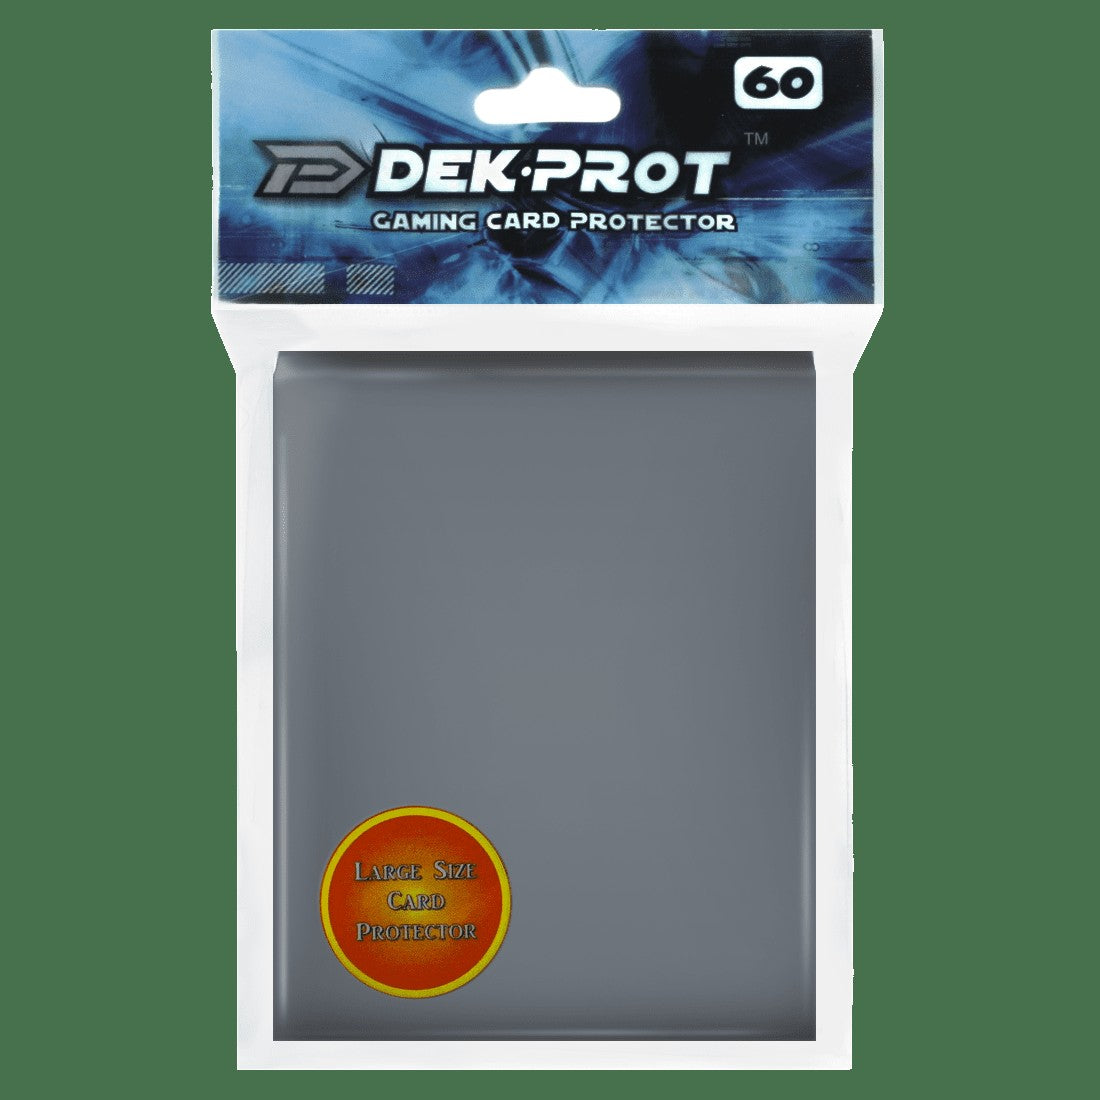 Dek Prot Standard Sized Card Sleeves - Darksteel Grey (60 Card Sleeves)